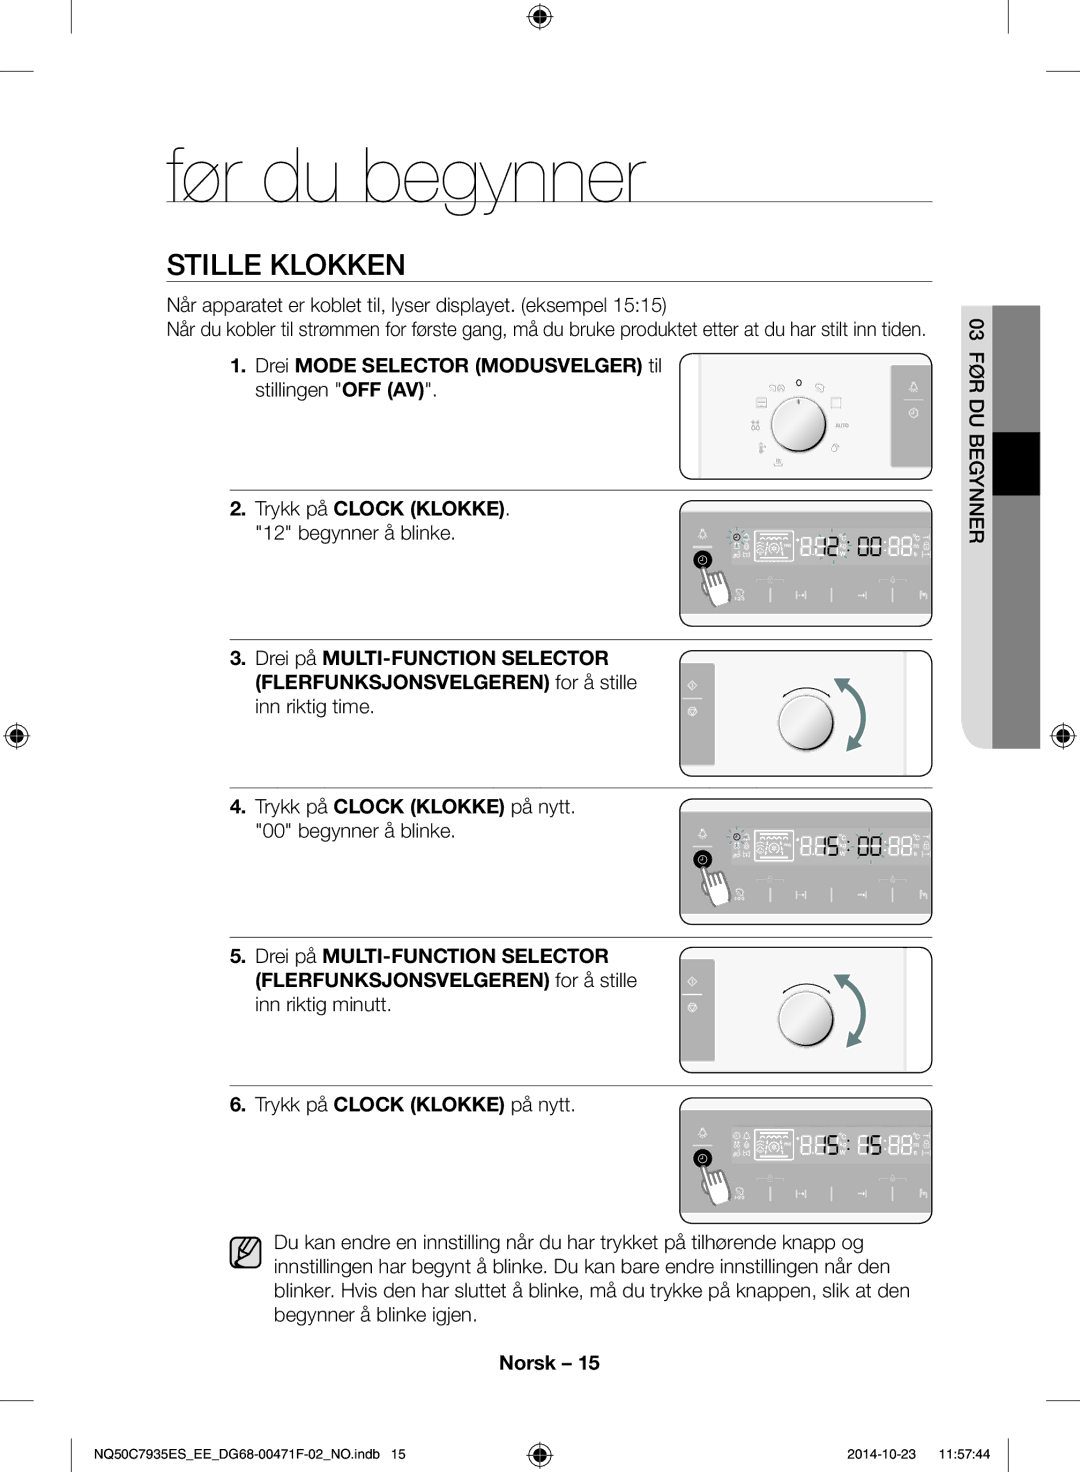 Samsung NQ50C7935ES/EE manual Før du begynner, Stille klokken, Når apparatet er koblet til, lyser displayet. eksempel 